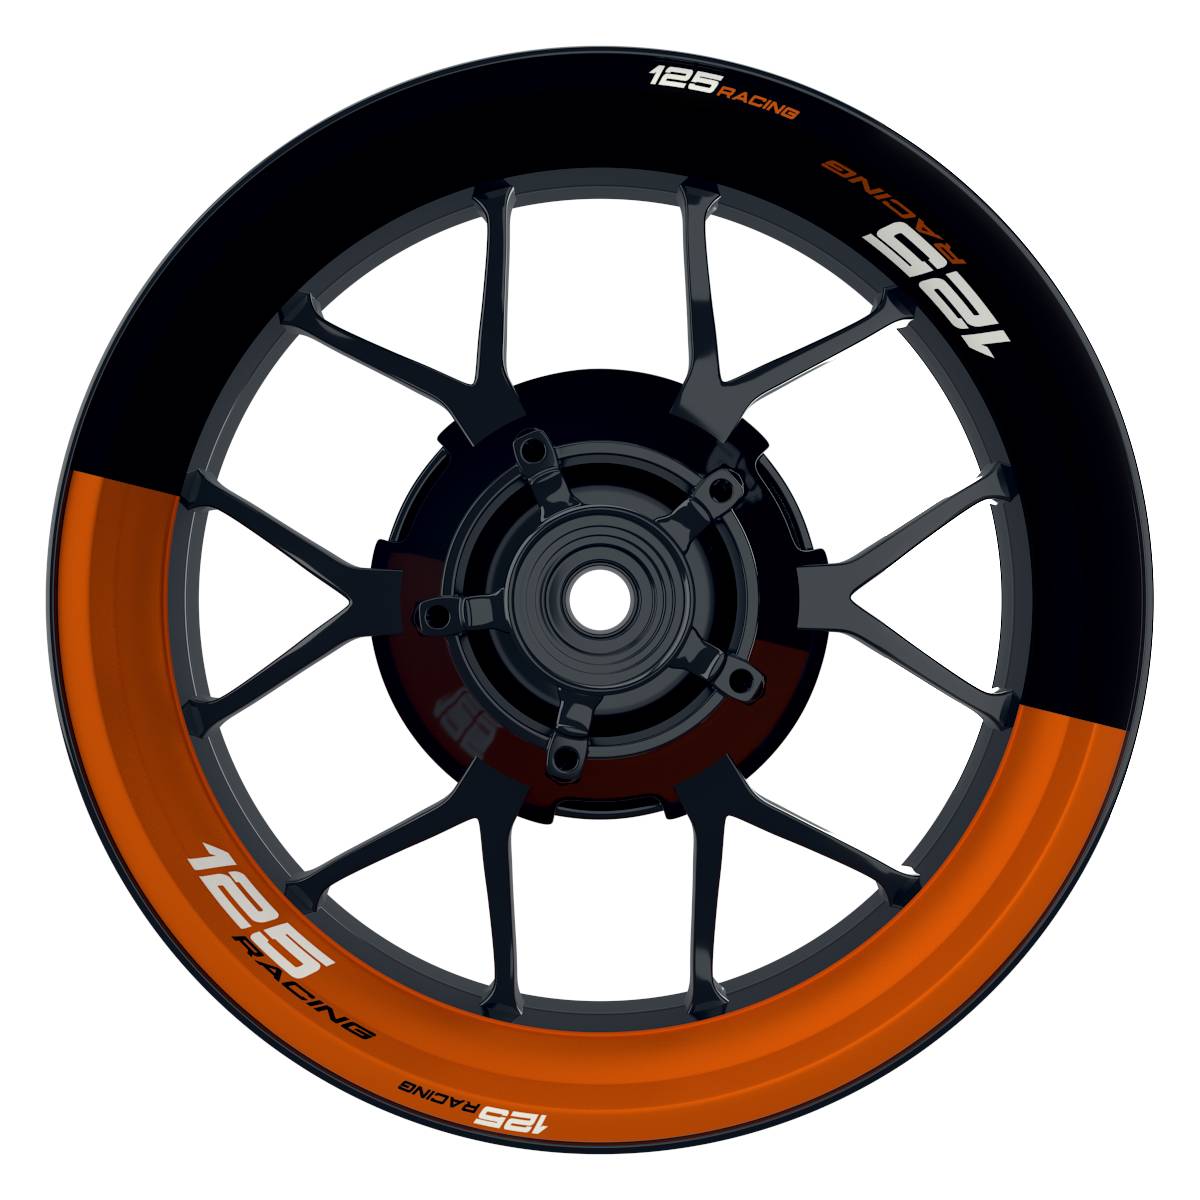 KTM 125RACING Halb halb schwarz orange Wheelsticker Felgenaufkleber